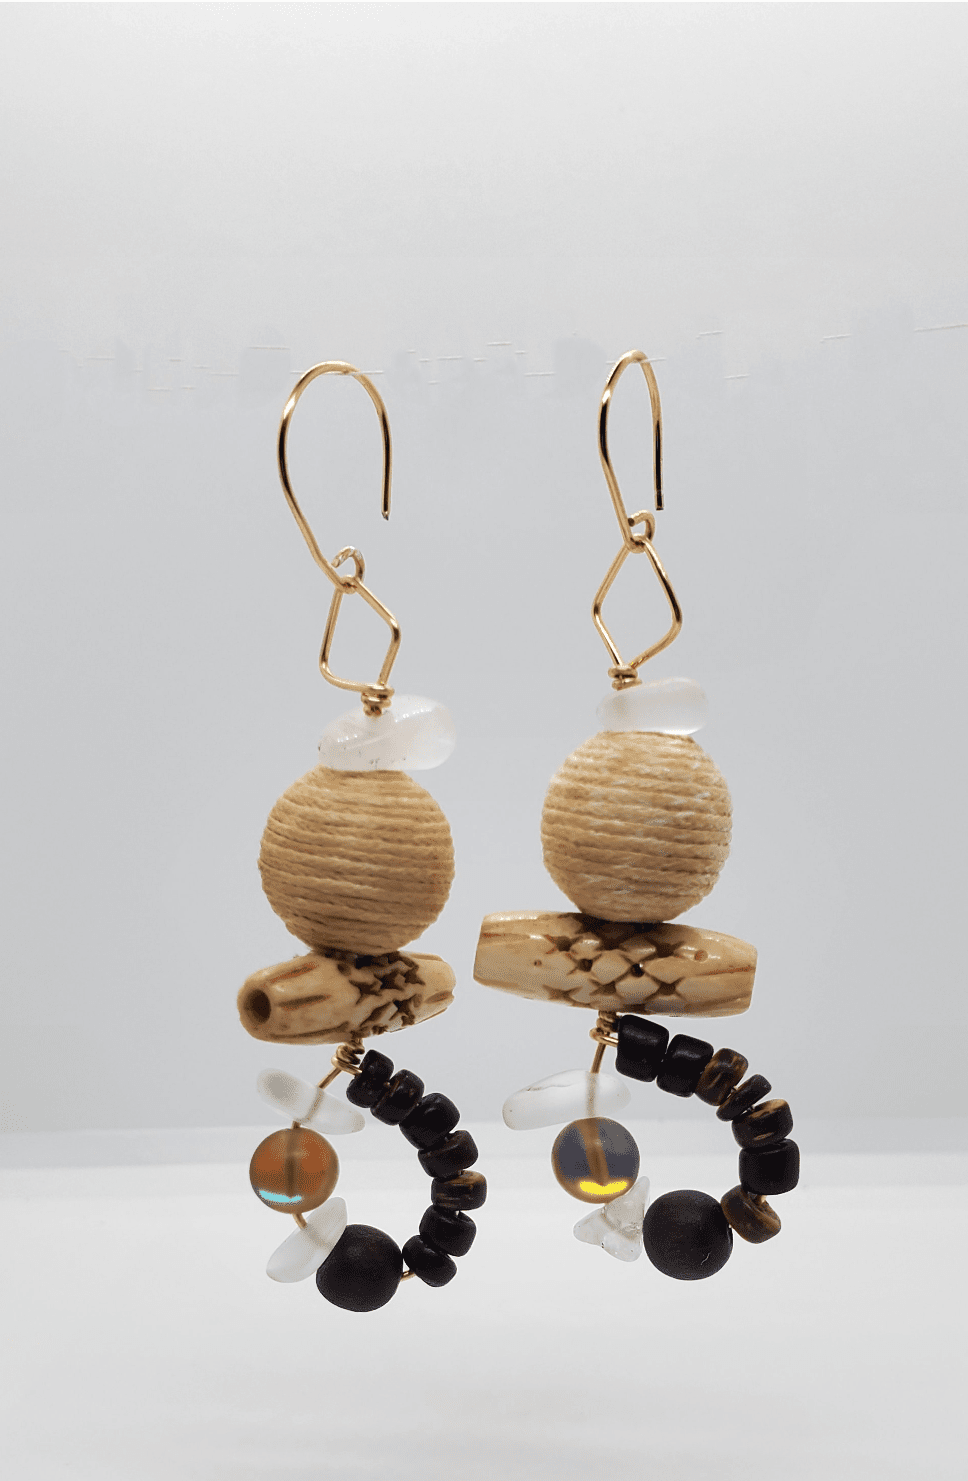 Photo of Mix It Up Dangles handmade by Jiana Deon, earrings for women, jianadeon.com